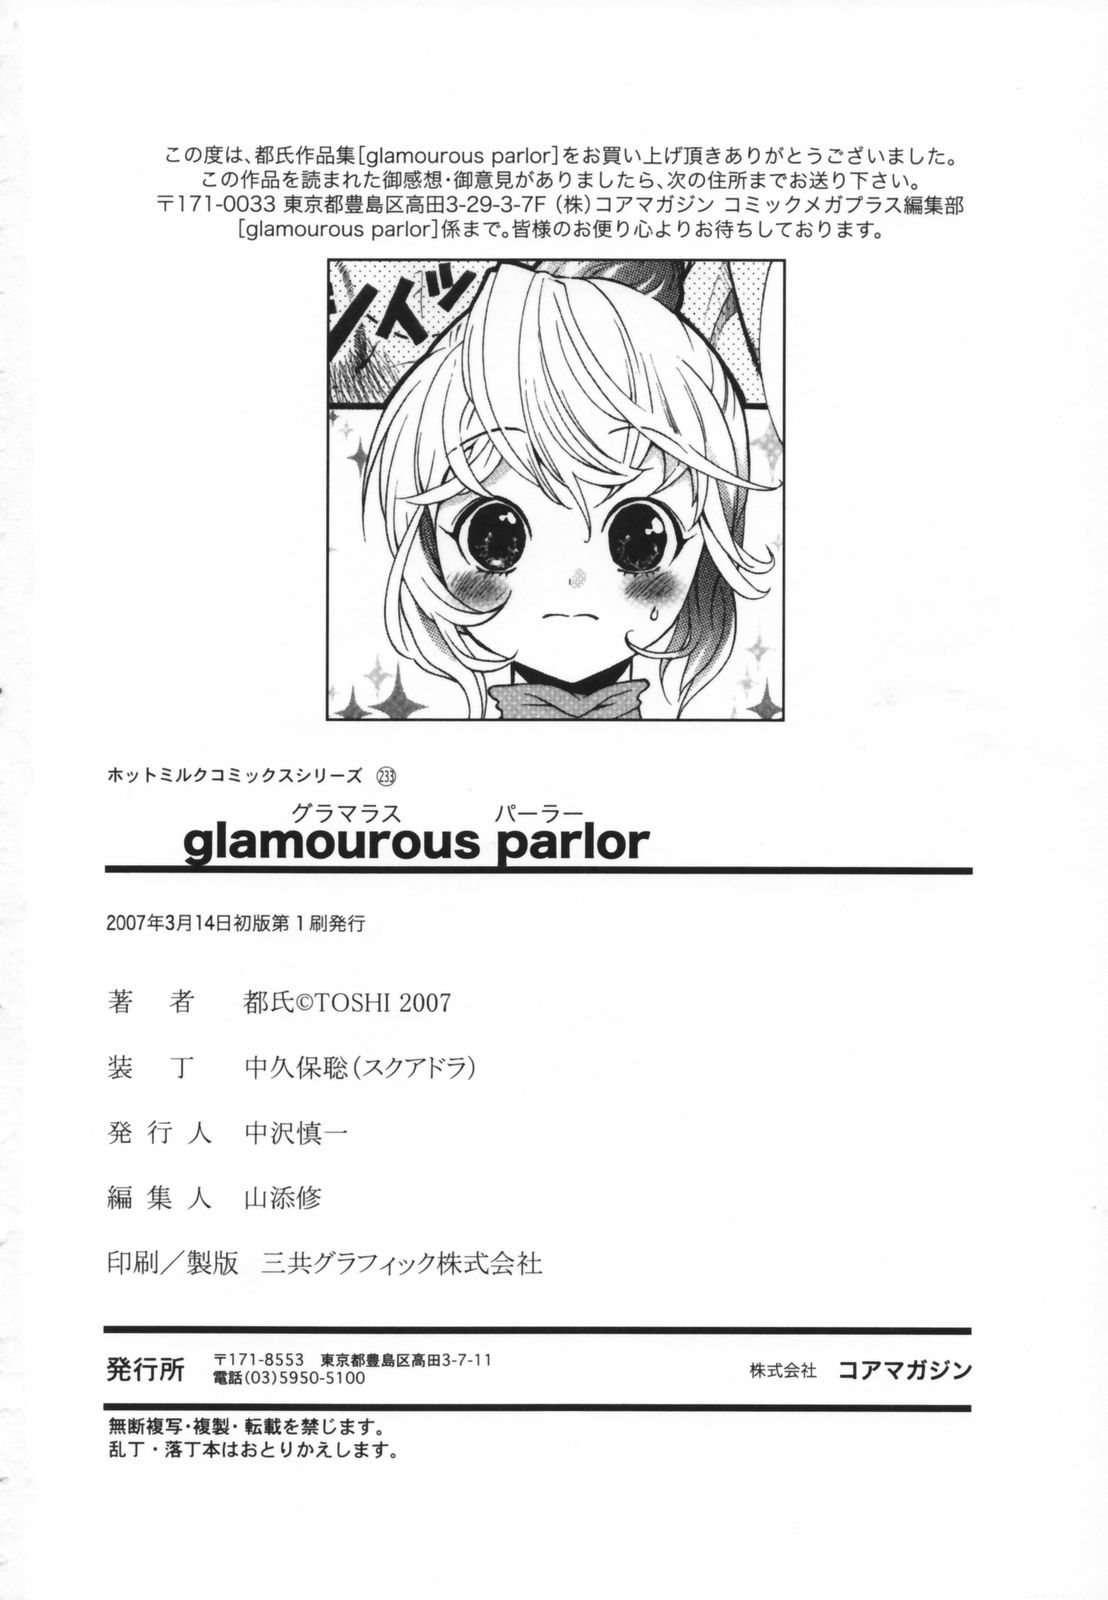 [都氏] glamourous parlor